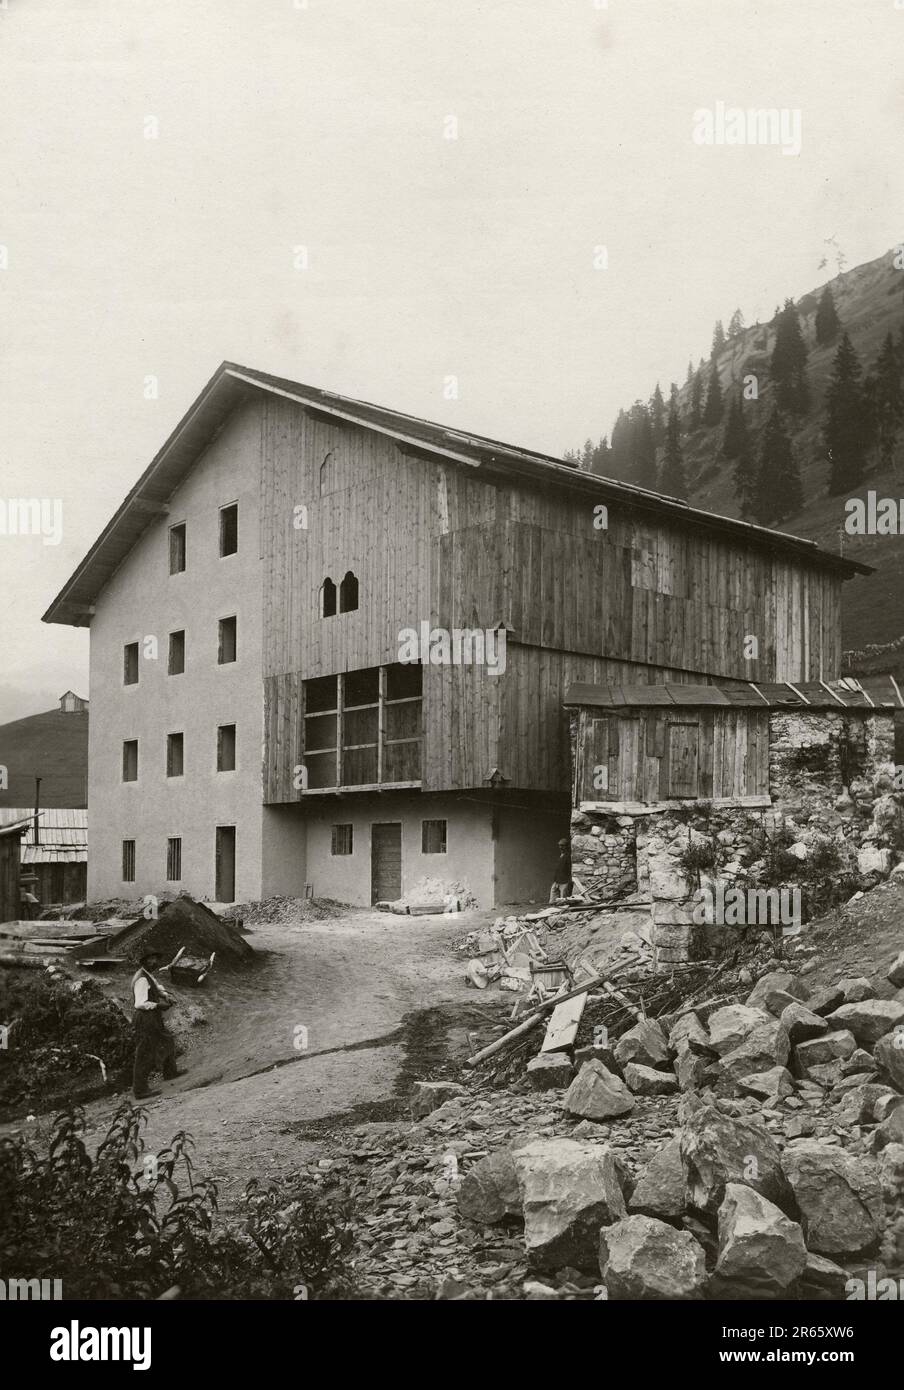 Veneto - Belluno - Livinallongo del Col di Lana (anni 30) Stock Photo